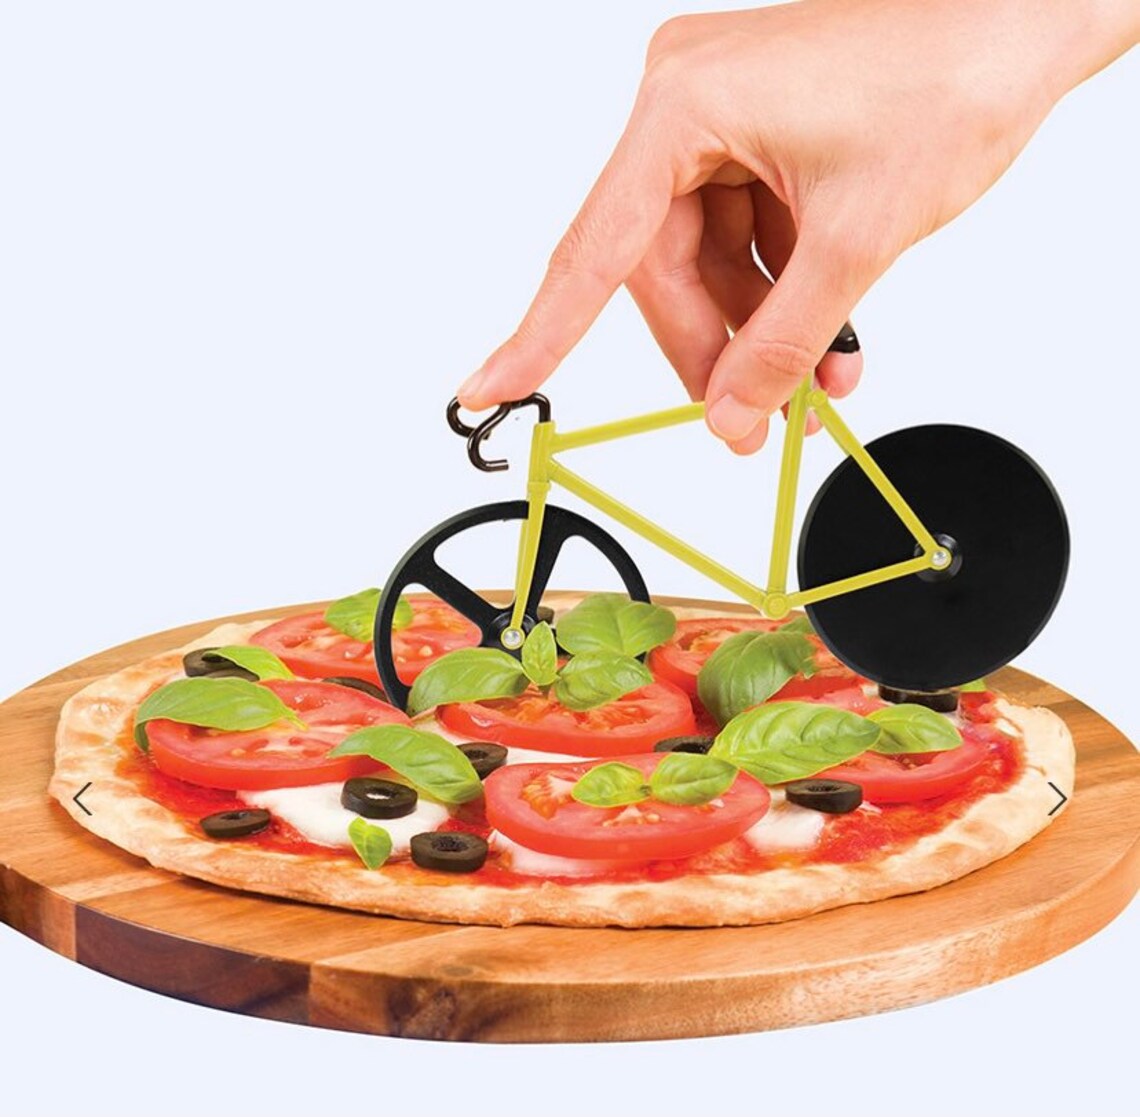 Fahrrad Pizza Cutter DOIY Fahrrad PizzaSchneider Etsy